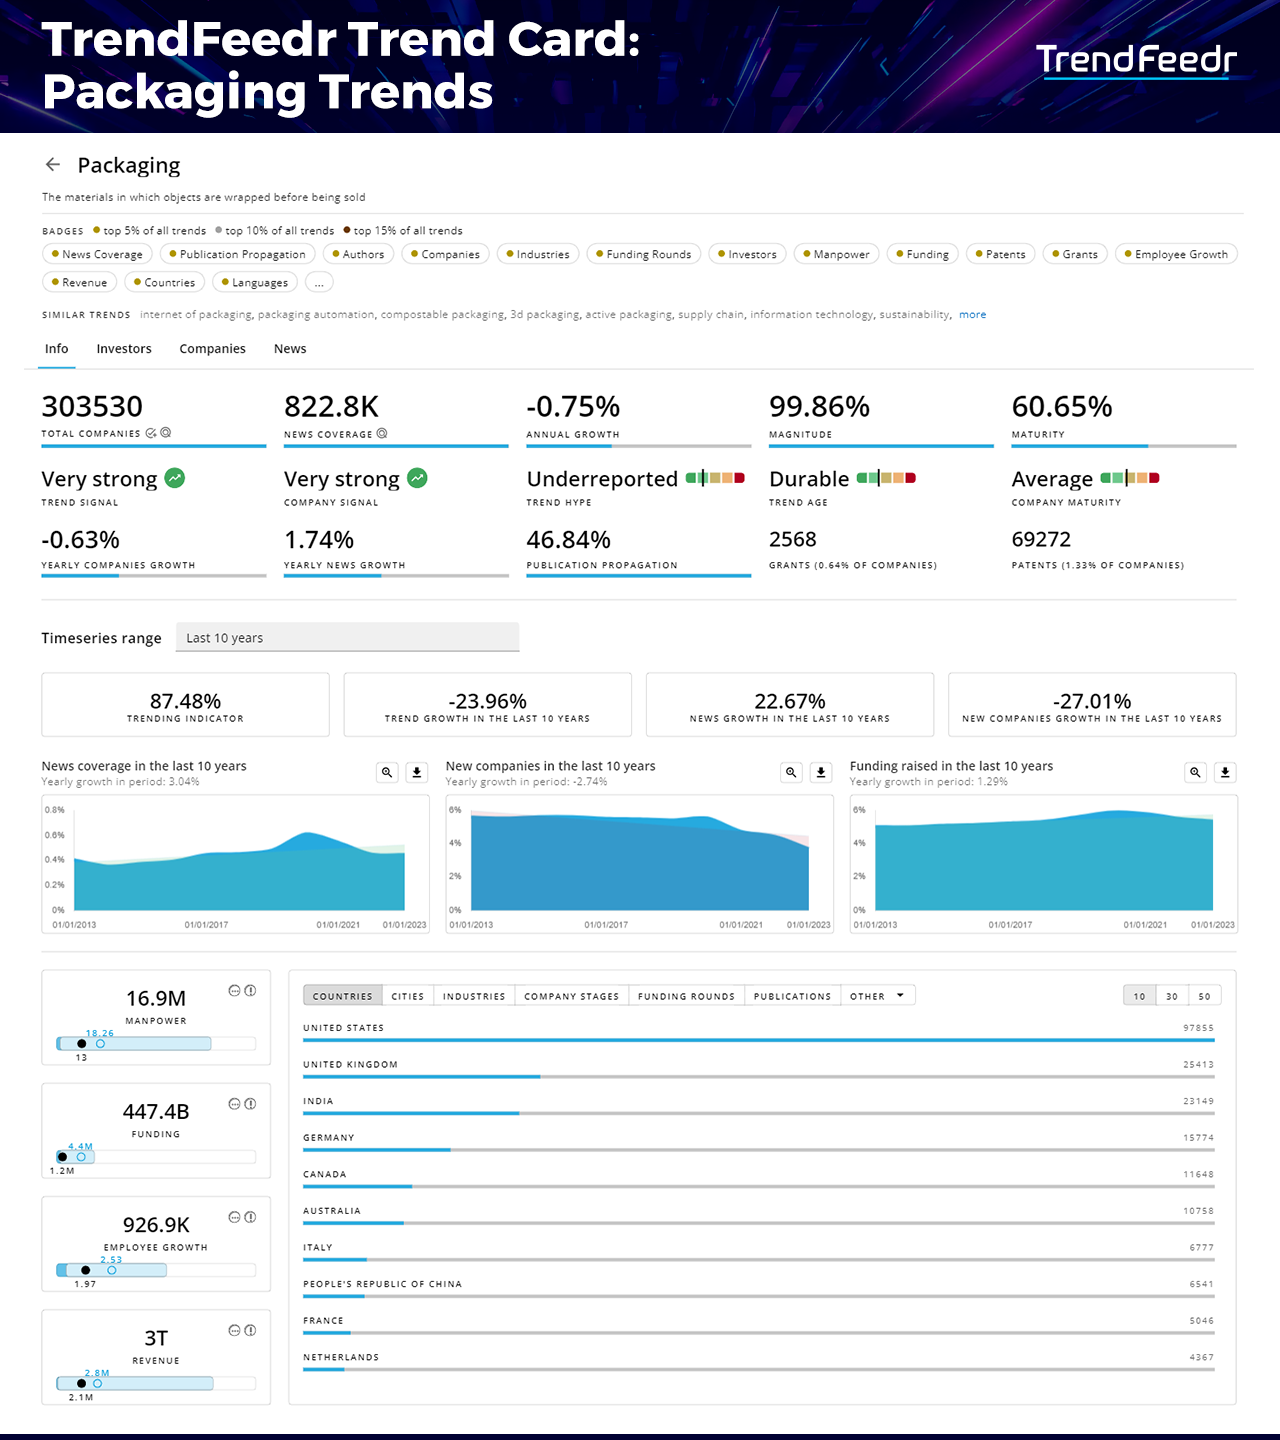 Packaging-Trends-Report-TrendCard-TrendFeedr-noresize